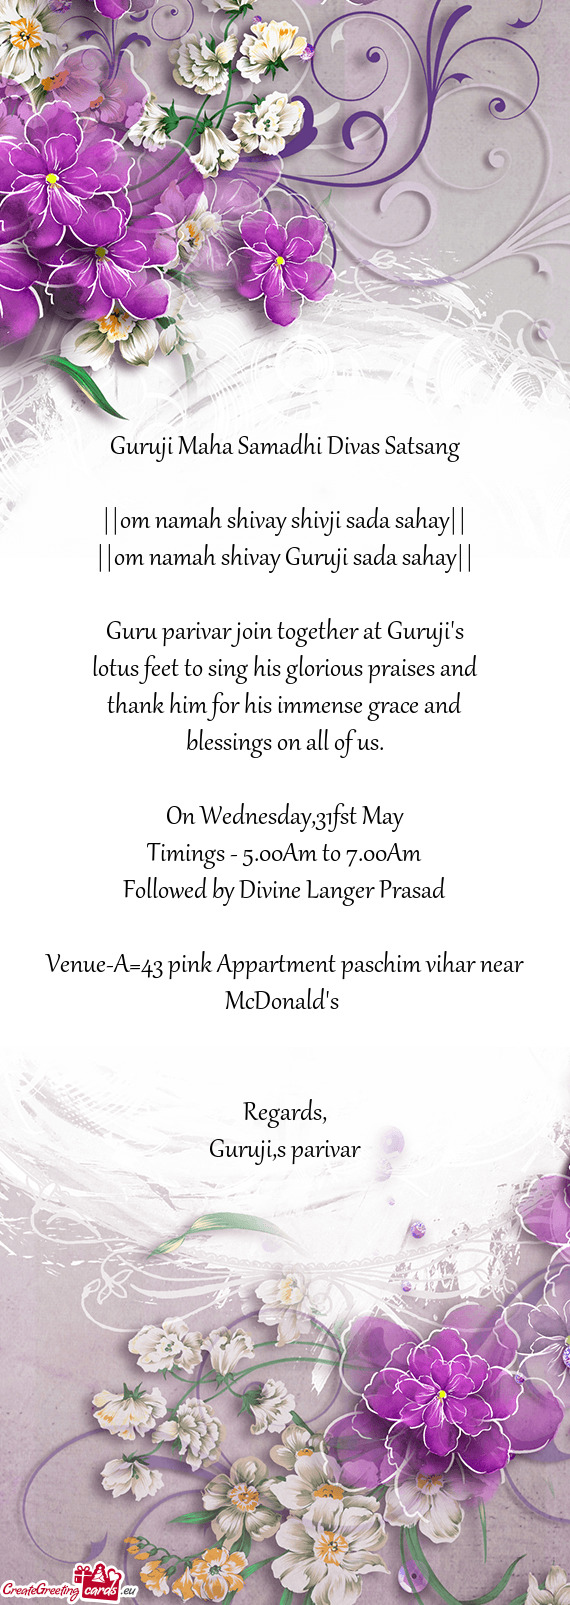 Guru parivar join together at Guruji